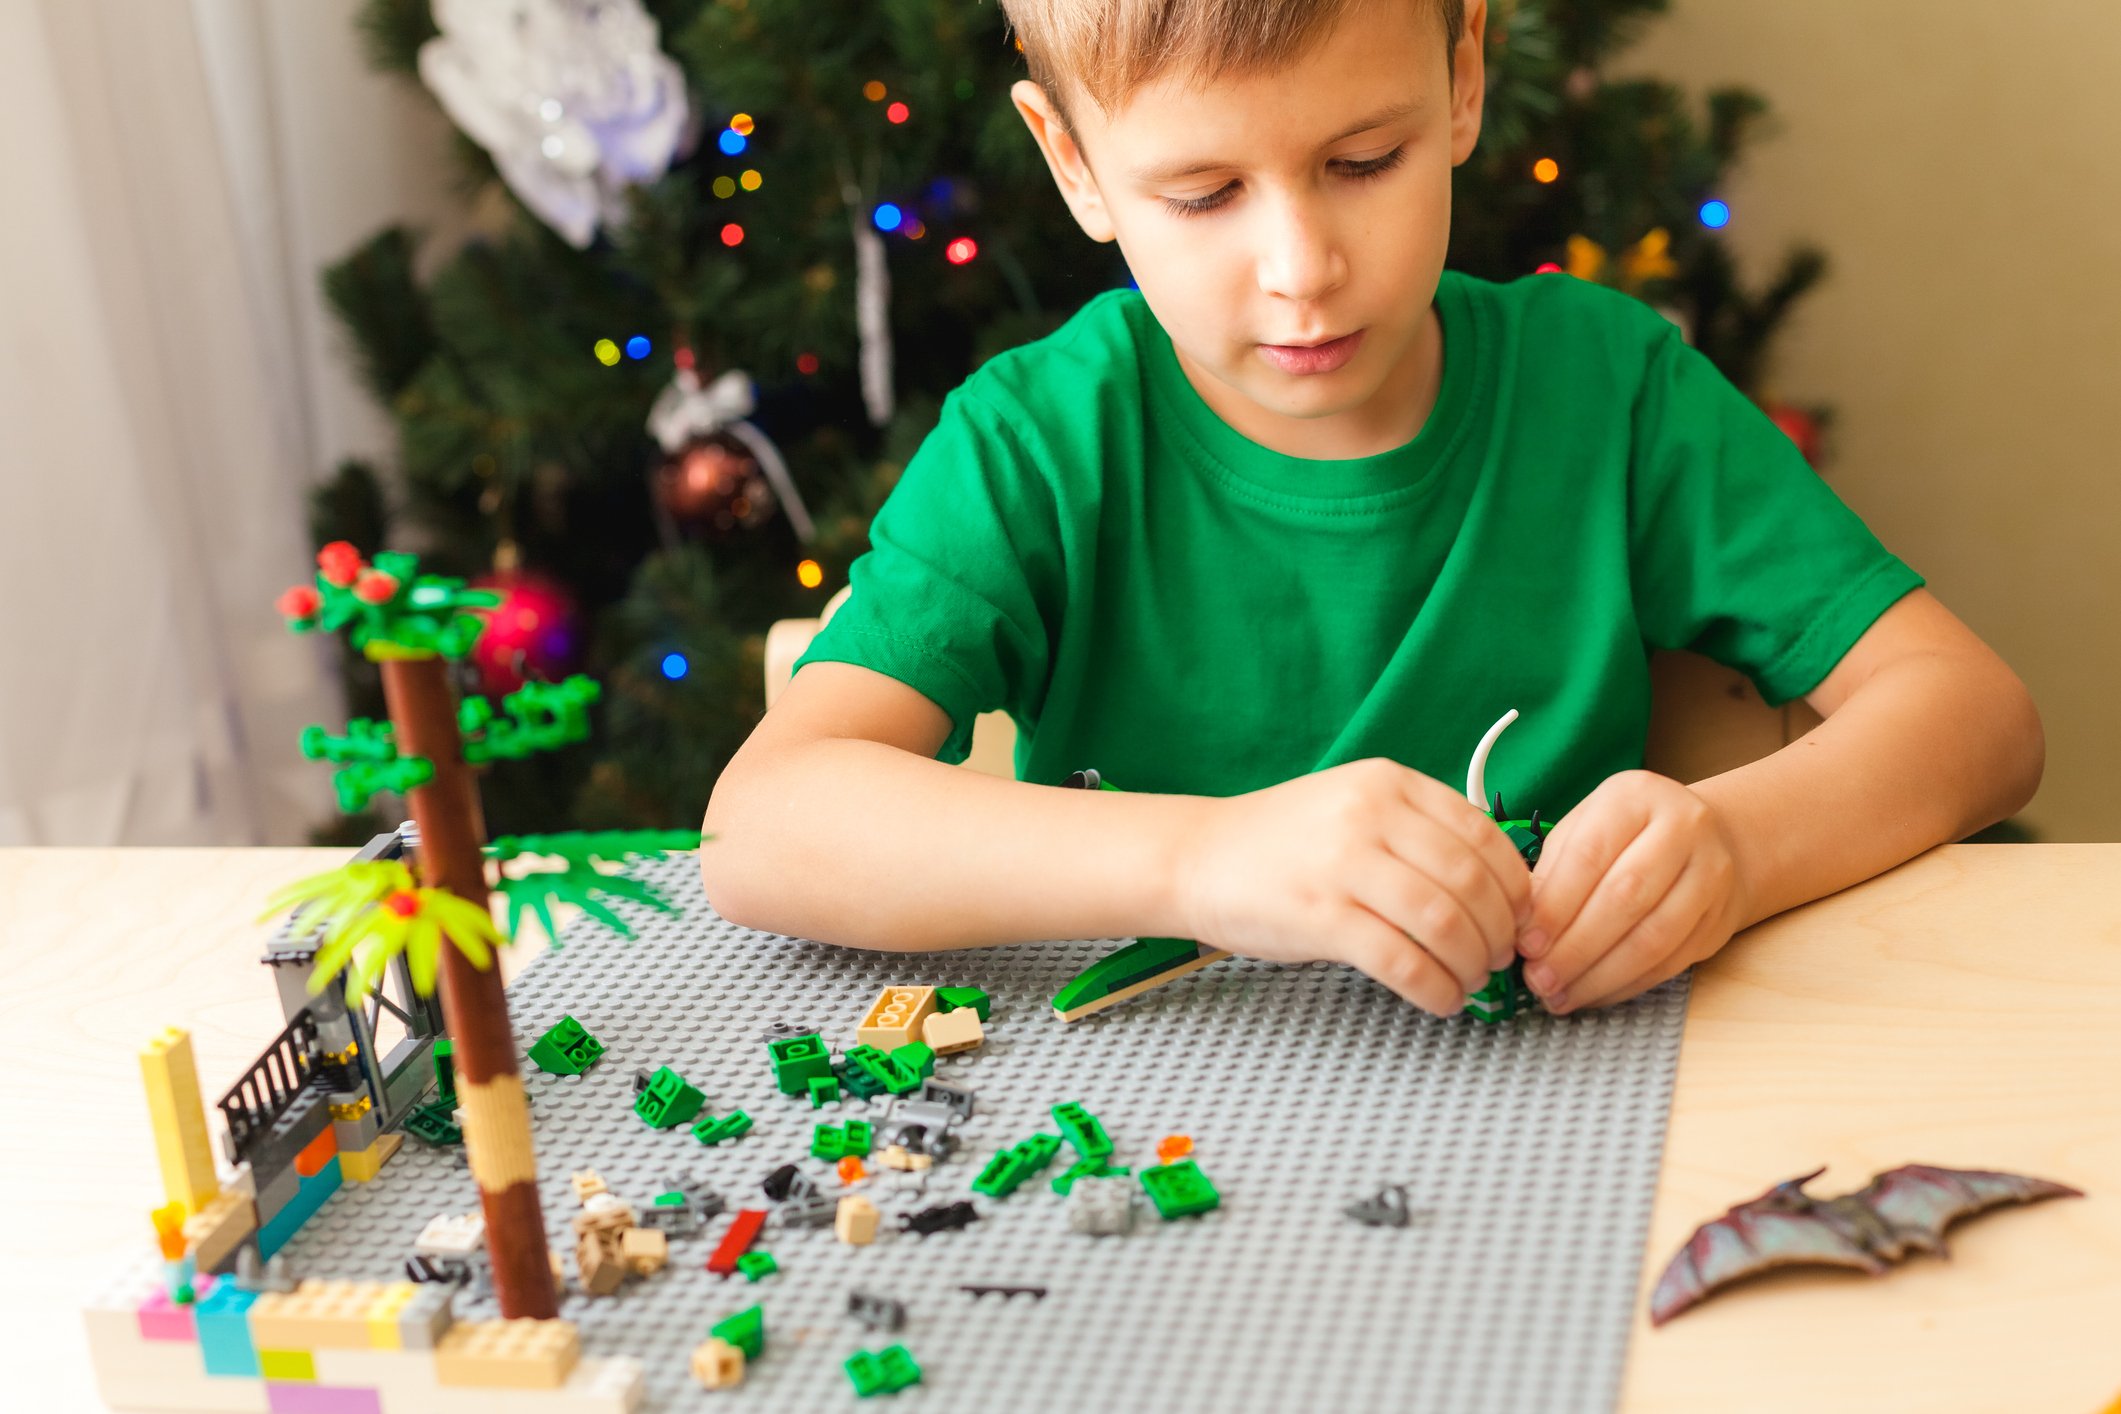 Livro Lego Harry Potter: Construções em 5 Minutos - Shopping do